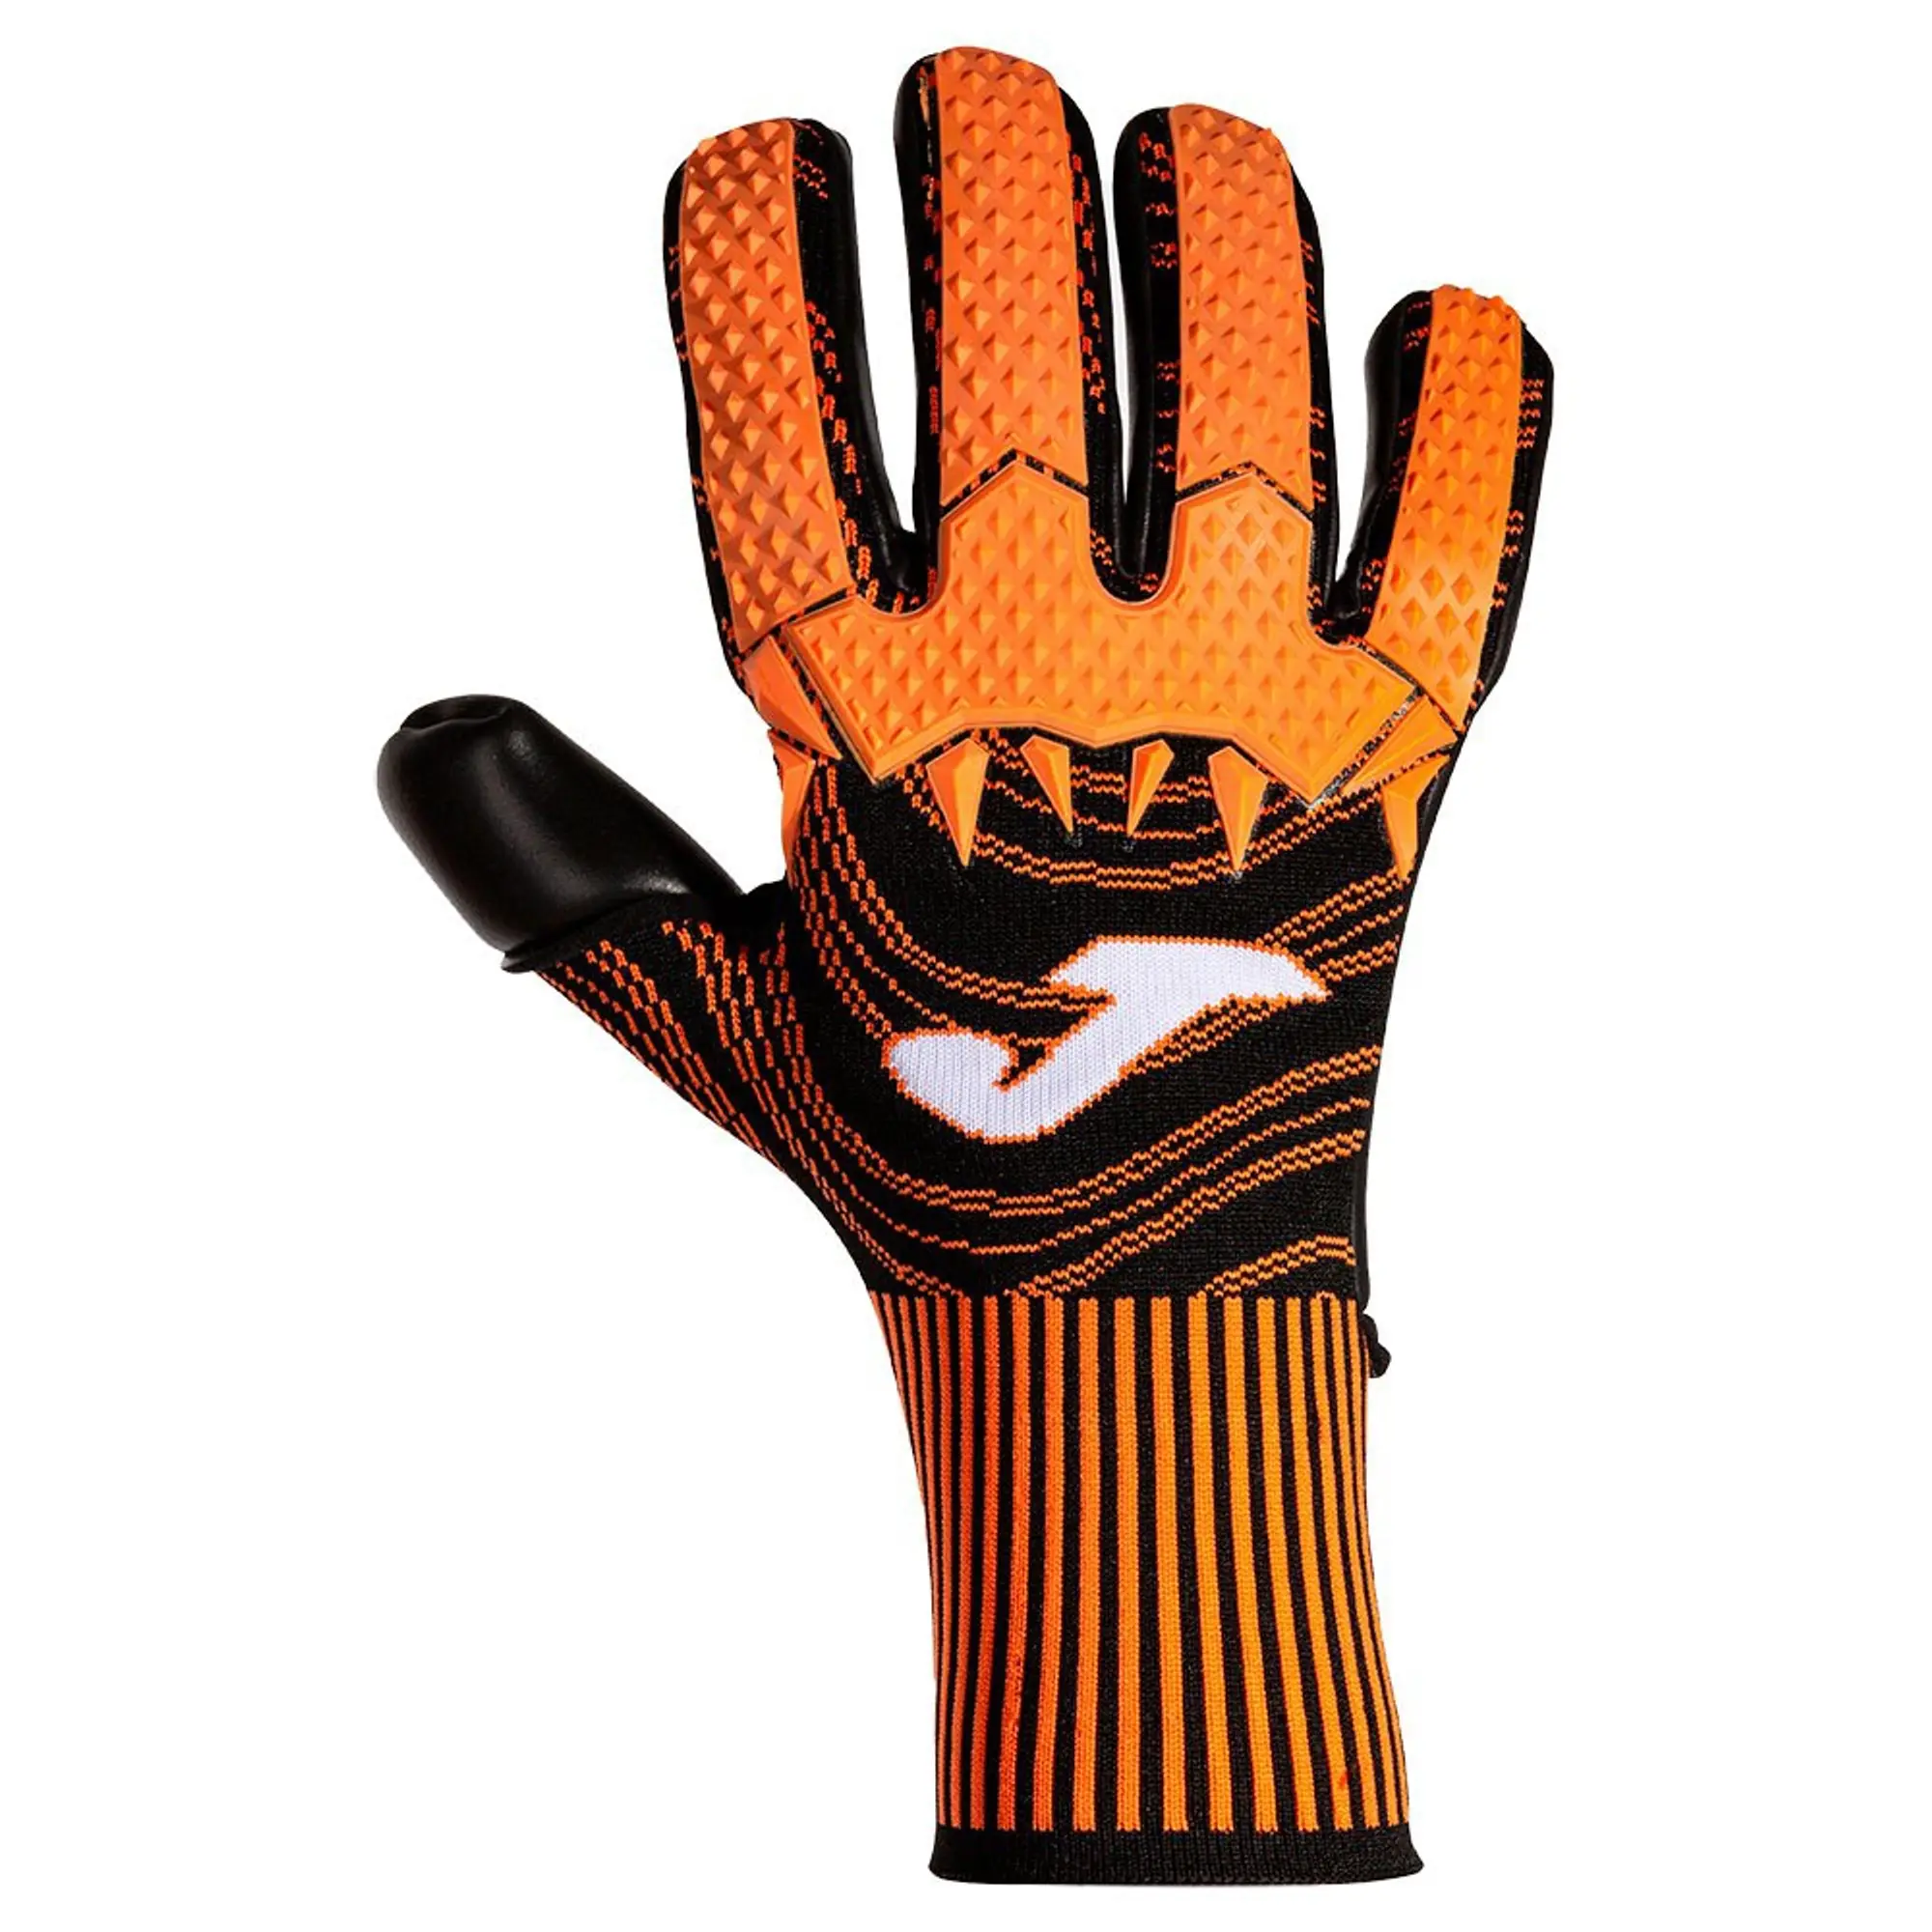 Joma Area 360 Goalkeeper Gloves  - Orange,Black